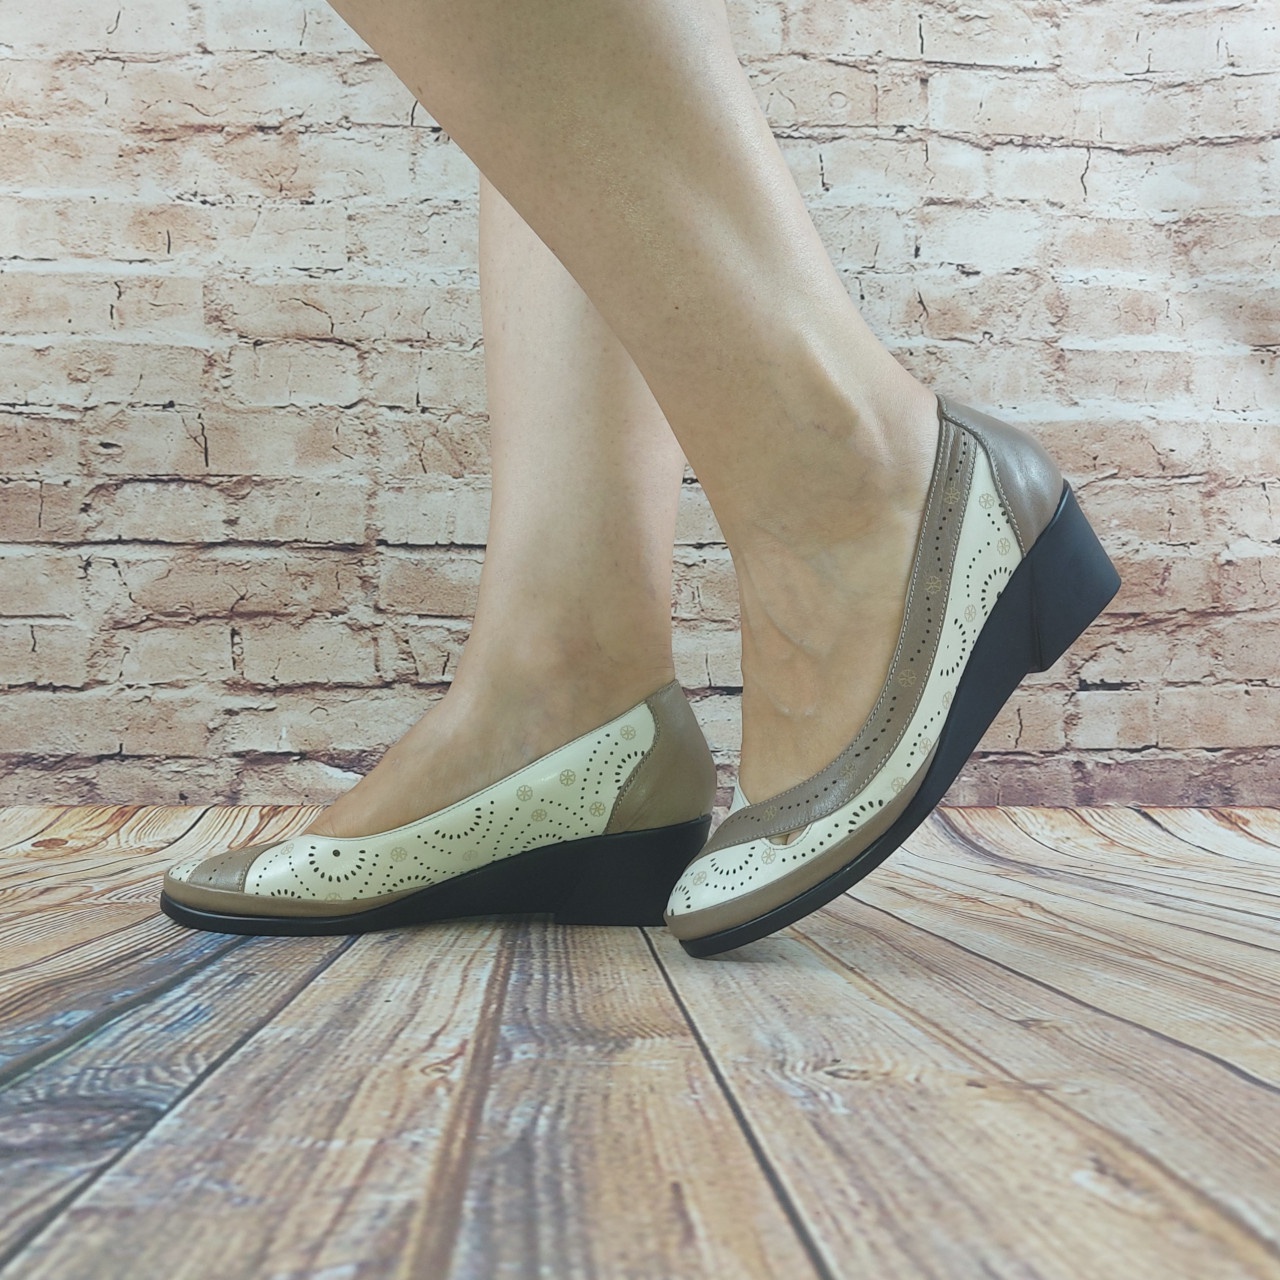 Туфлі жіночі Marani Magli 762-16-78 біло-коричневі шкіра танкетка розміри 36,37